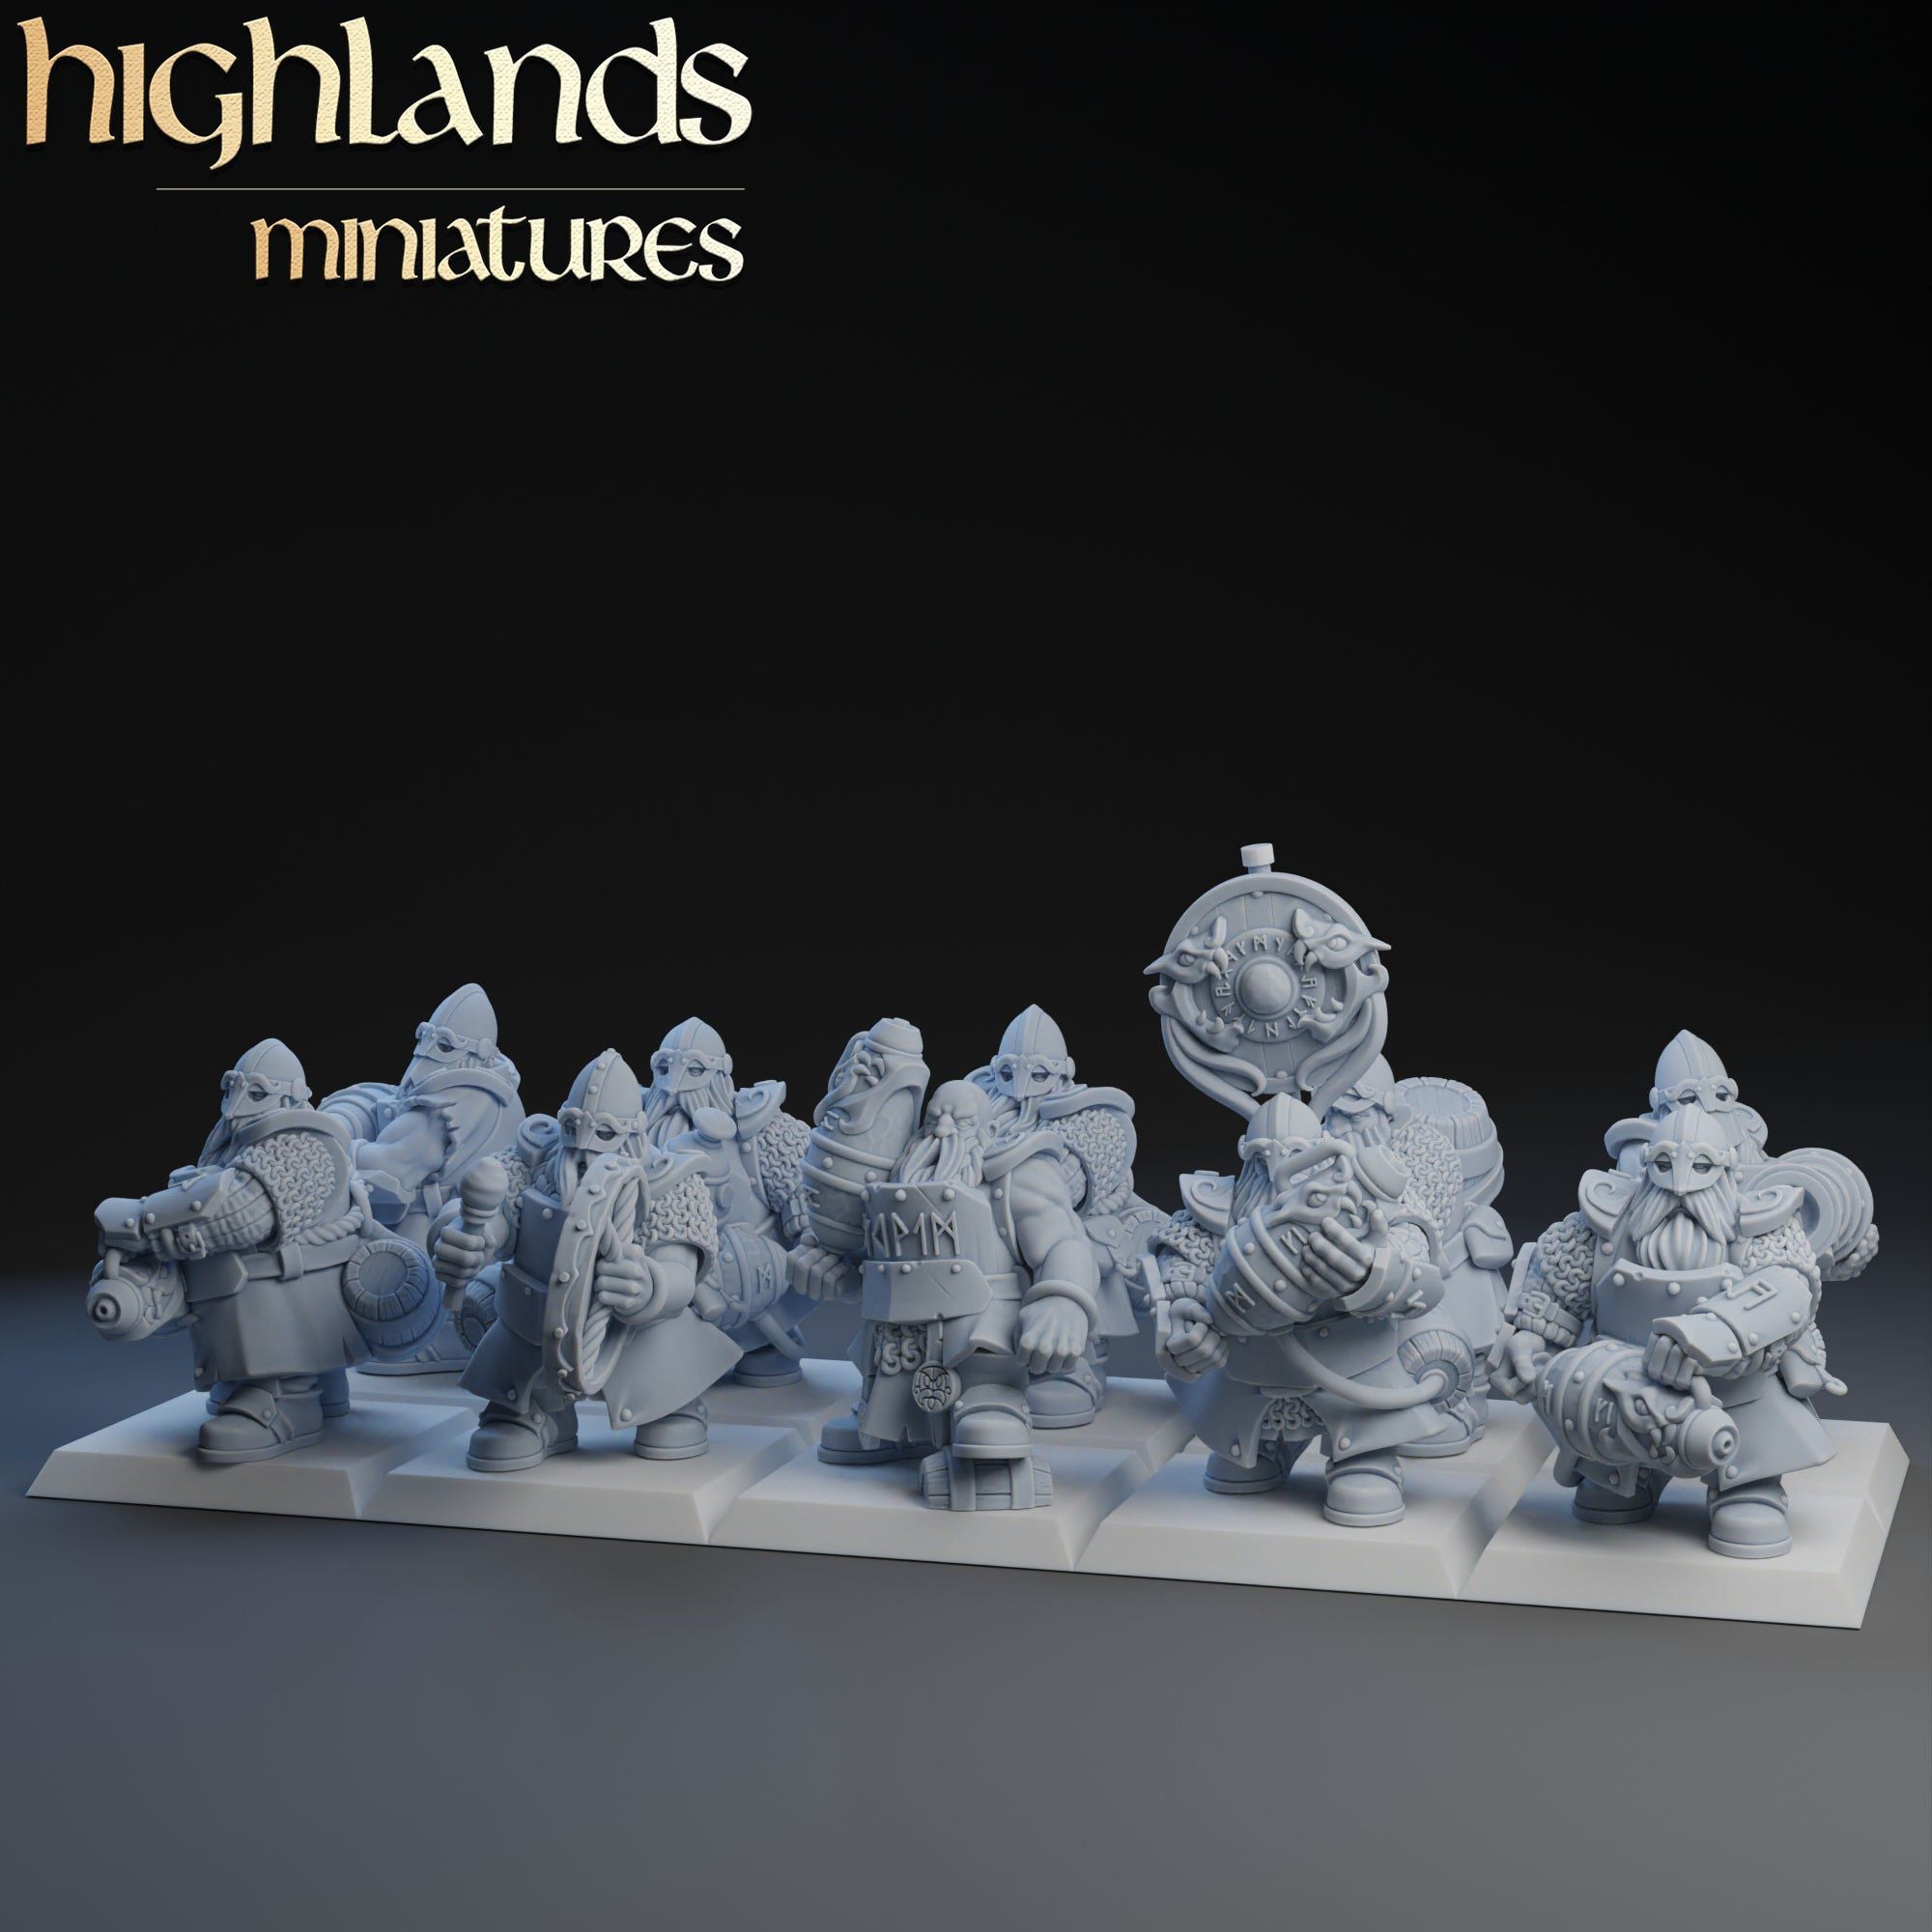 Dwarfs Firespitters Regiment | Highlands Miniatures | 32mm